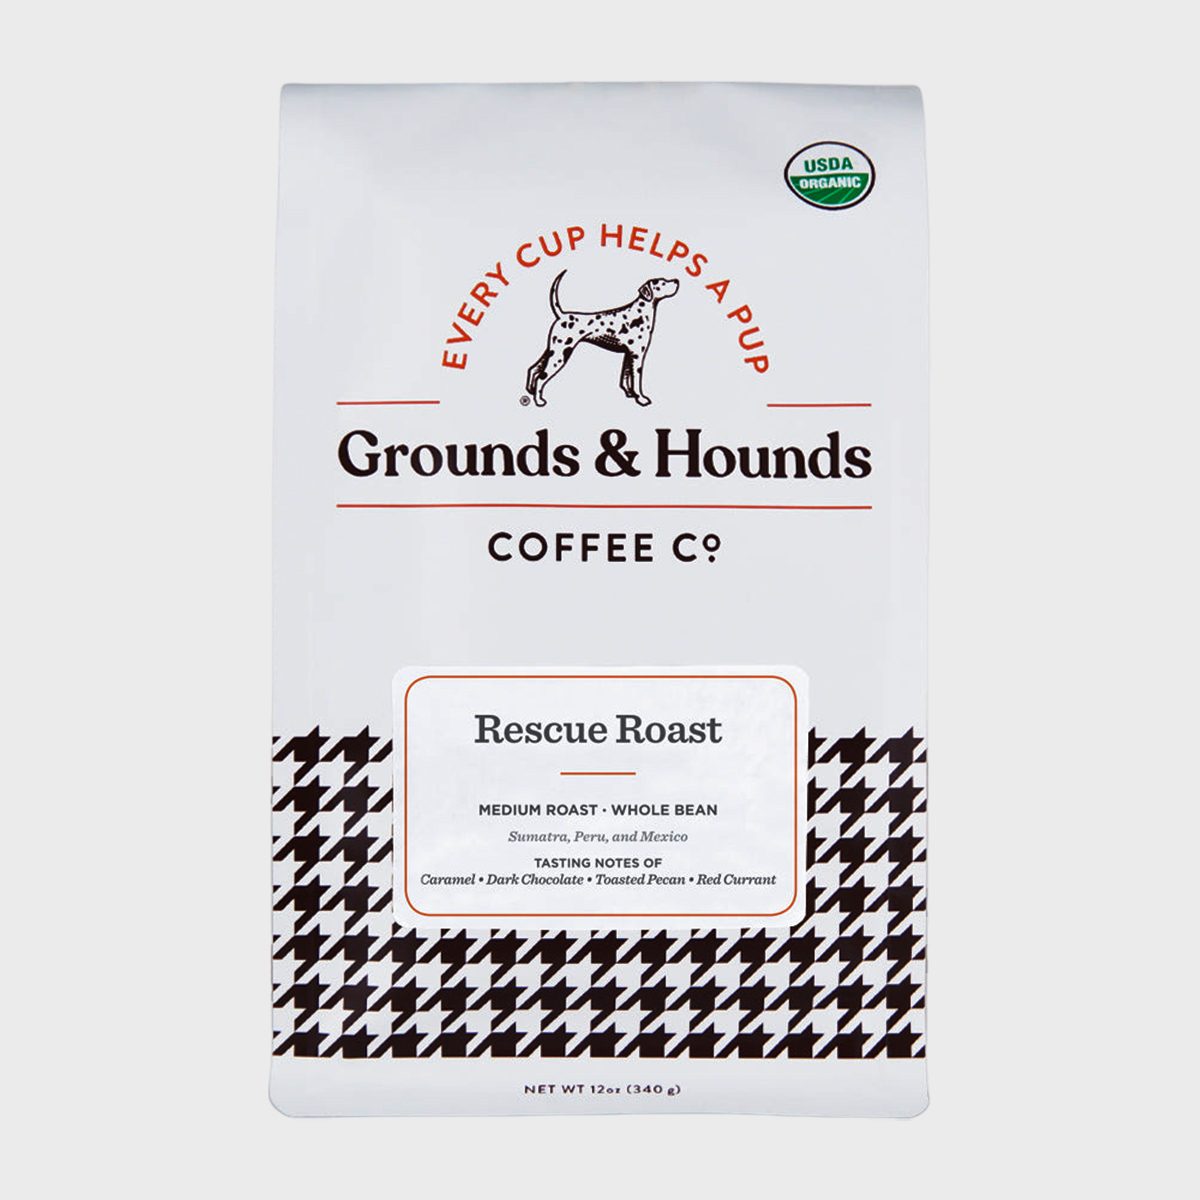 Grounds & Hounds Rescue Roast Ecomm Via Groundsandhoundscoffee.com 1